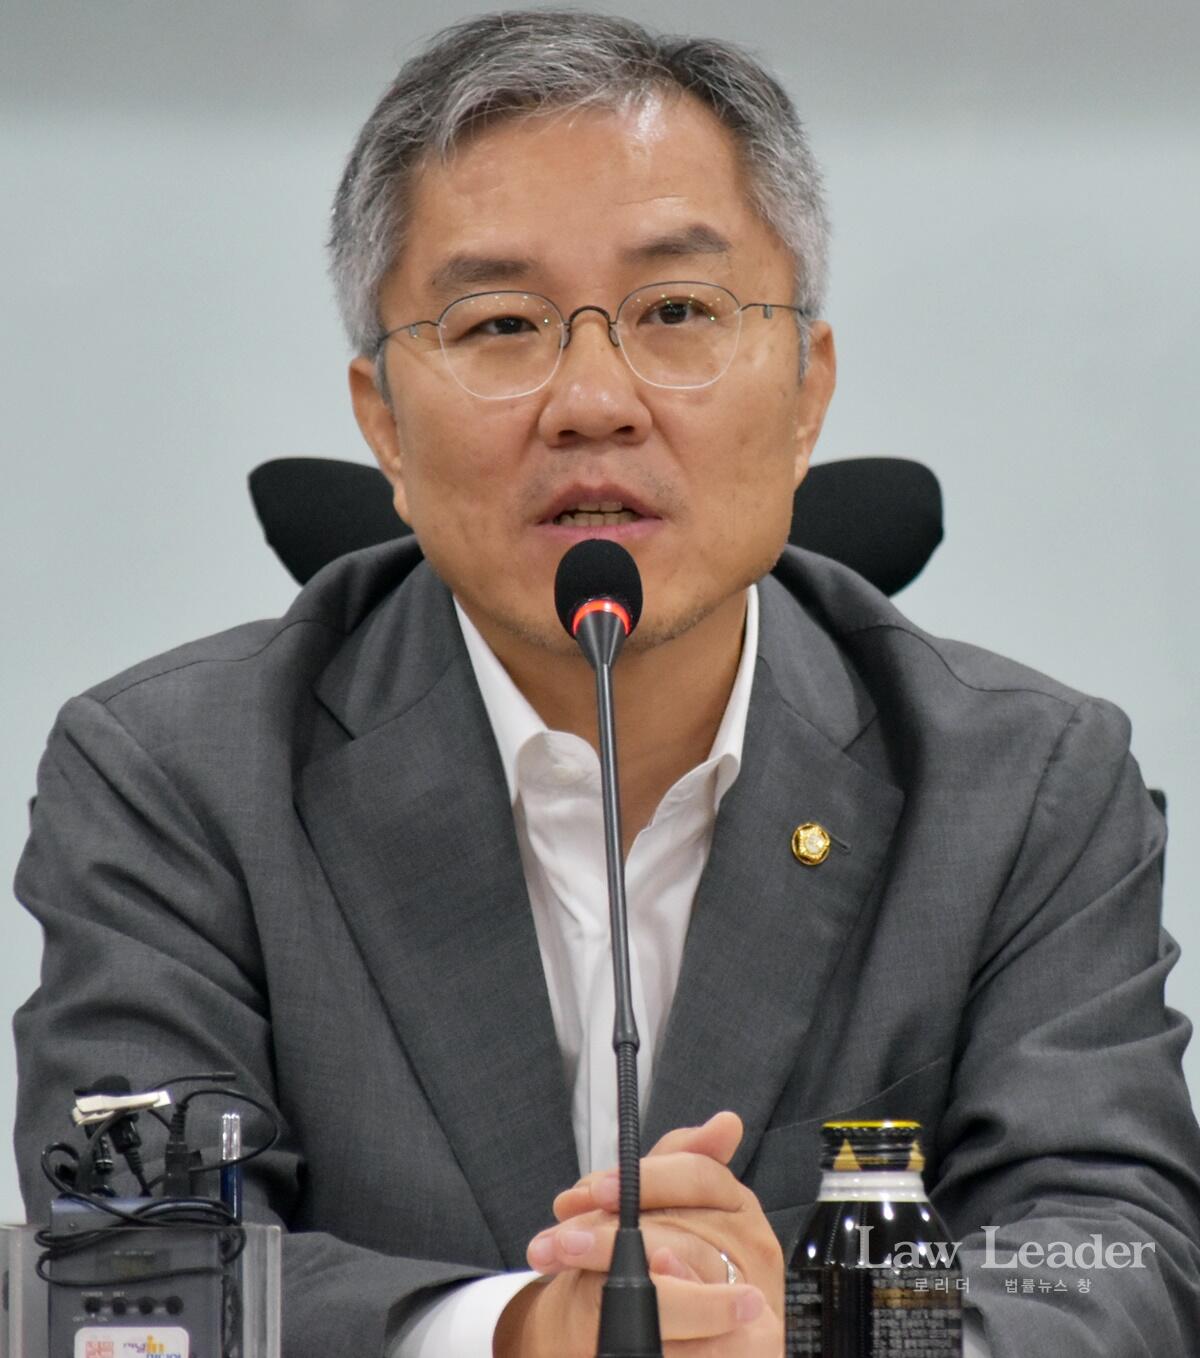 열린민주당 대표 최강욱 국회의원